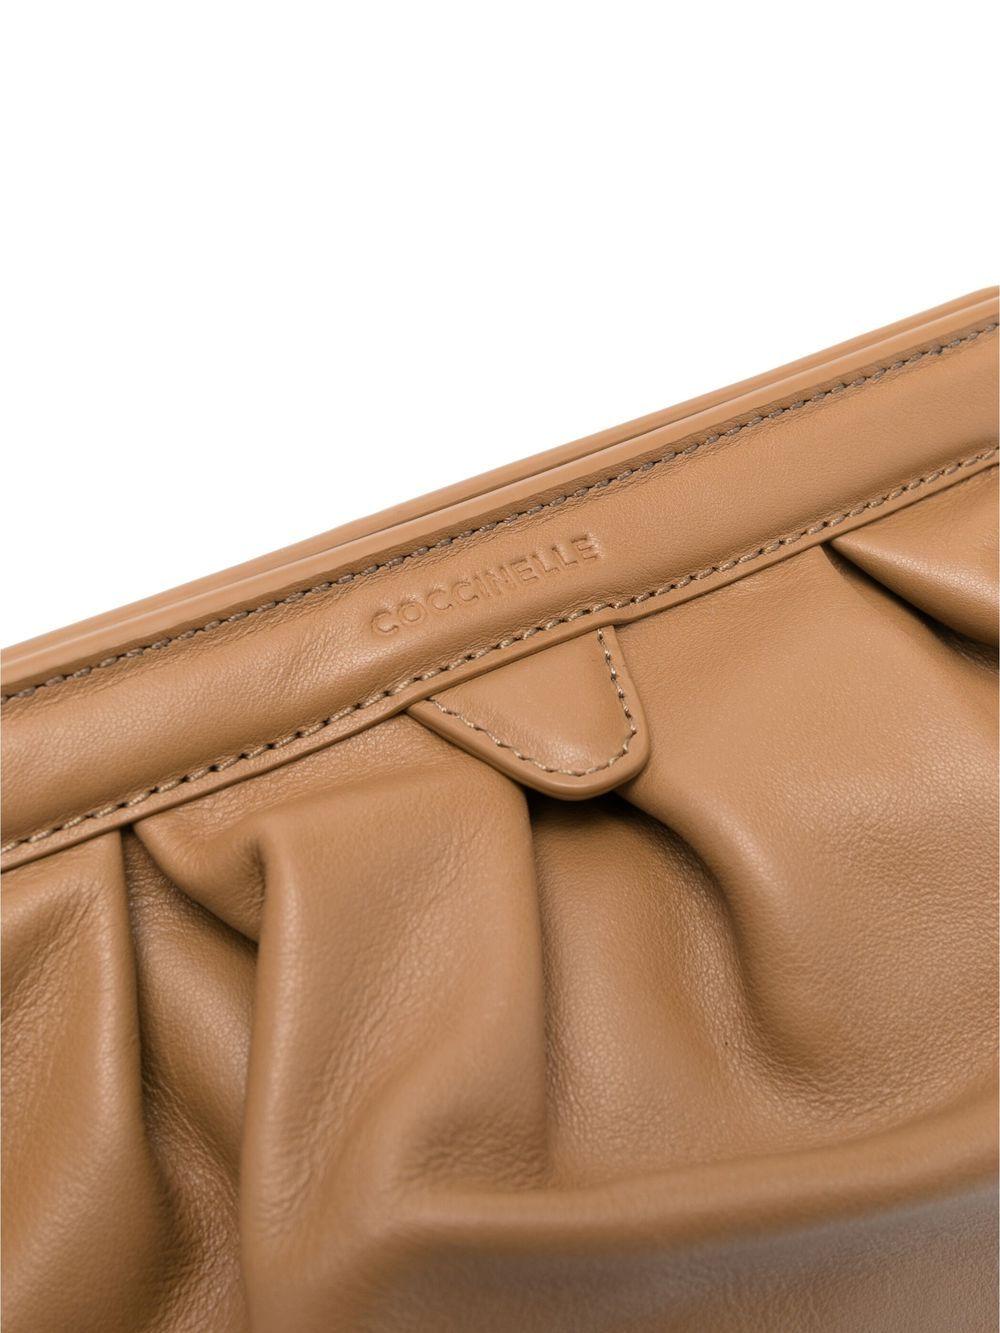 Coccinelle Handbag \u201eW-axnarn\u201c brown Bags Handbags 